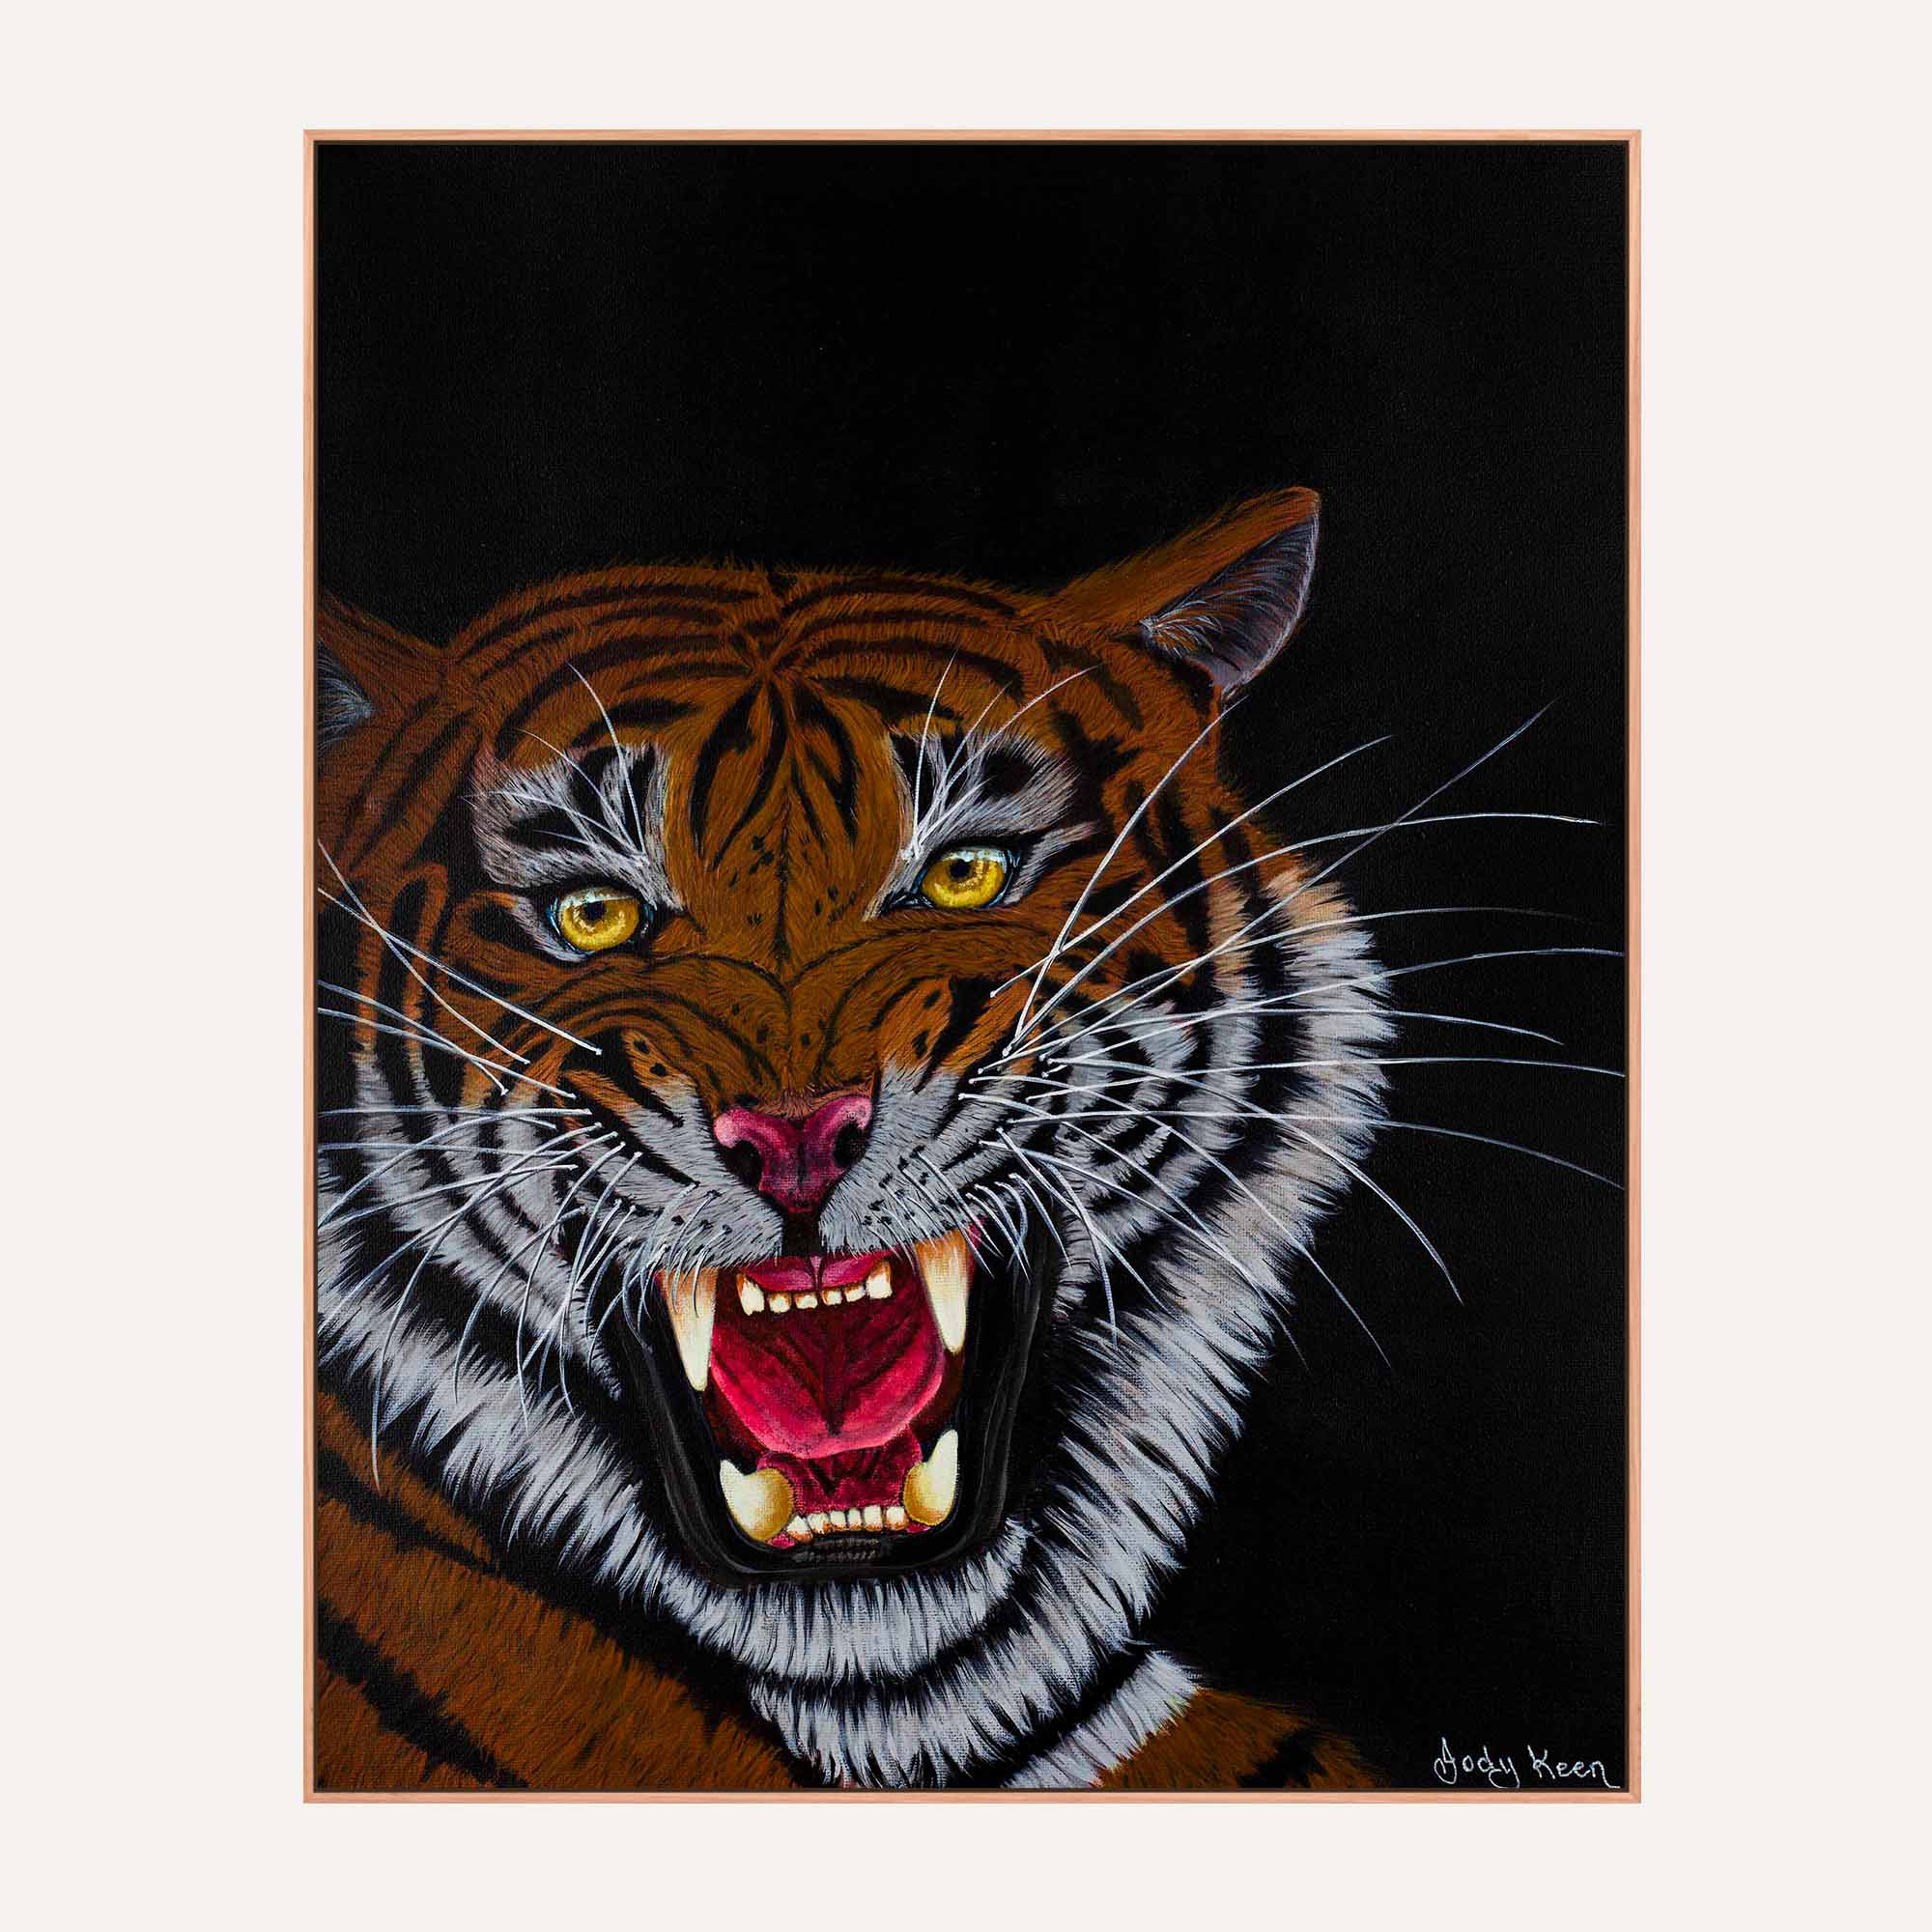 77. Big Cat Tiger Original